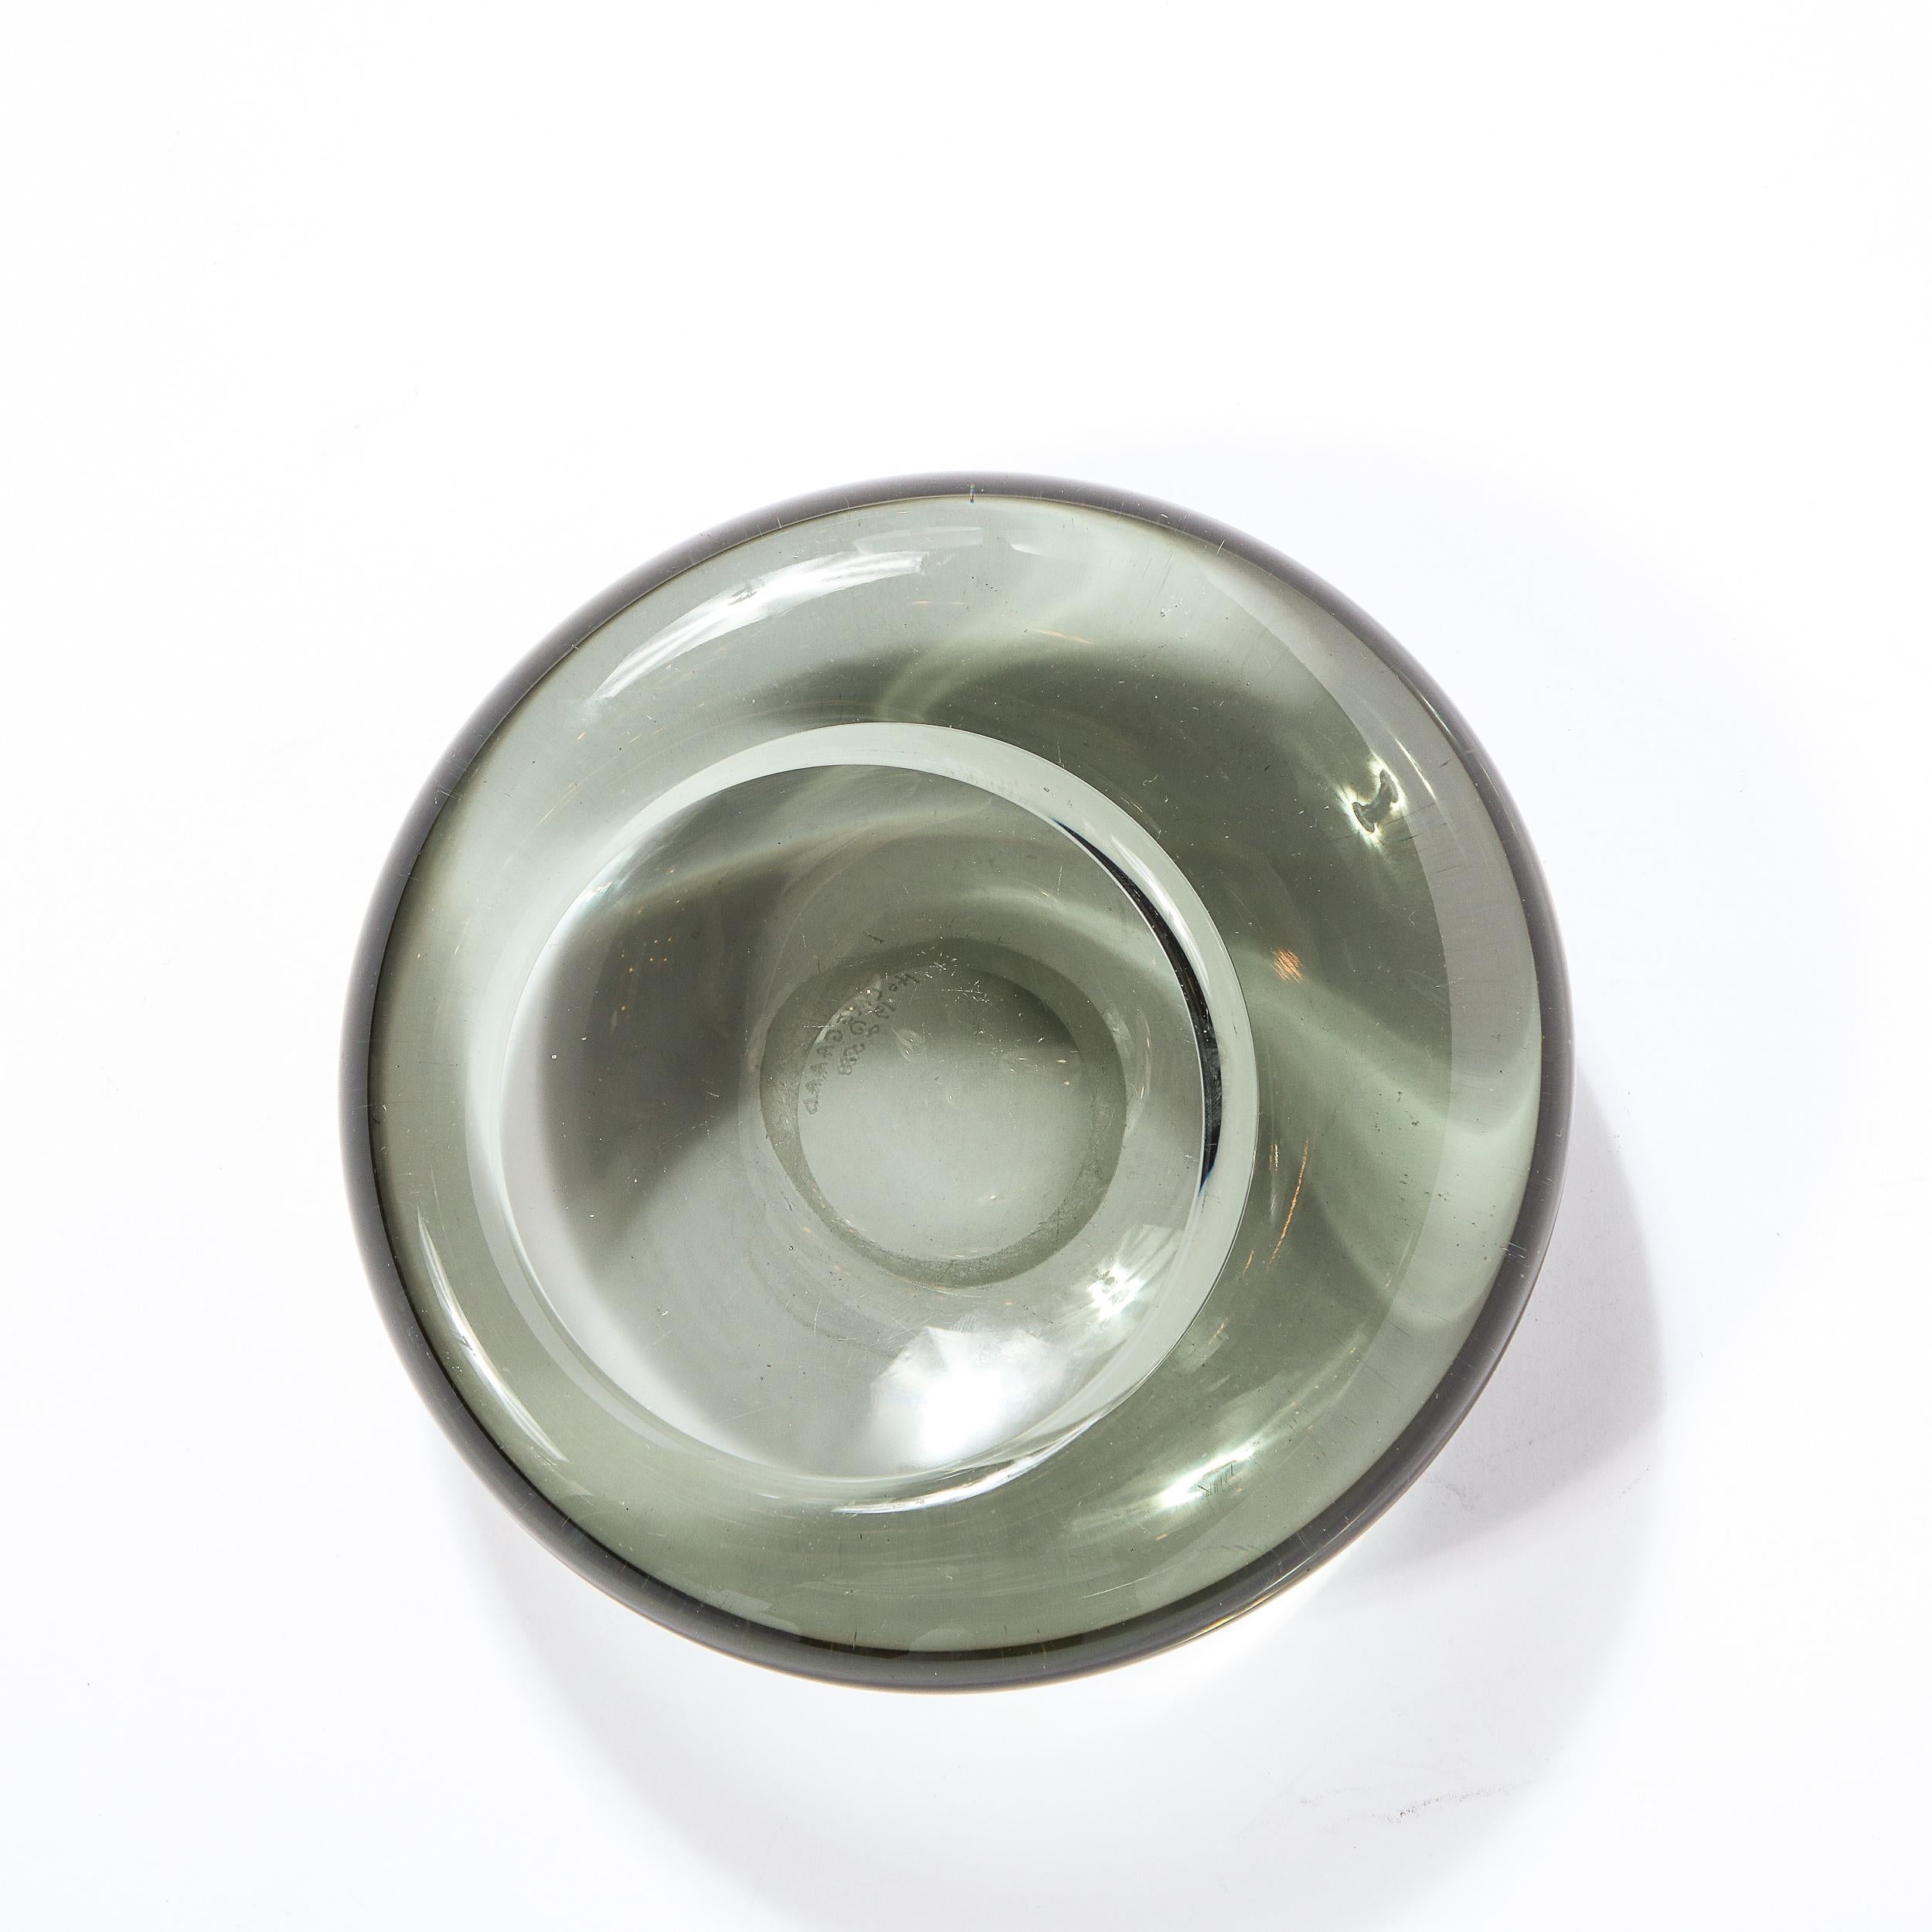 Ce superbe plat en verre fumé de style moderne du milieu du siècle a été réalisé par le célèbre atelier de Holmegaard en Suède en 1958. Il présente un corps circulaire sculptural avec une dépression centrale légèrement décalée, le tout dans un